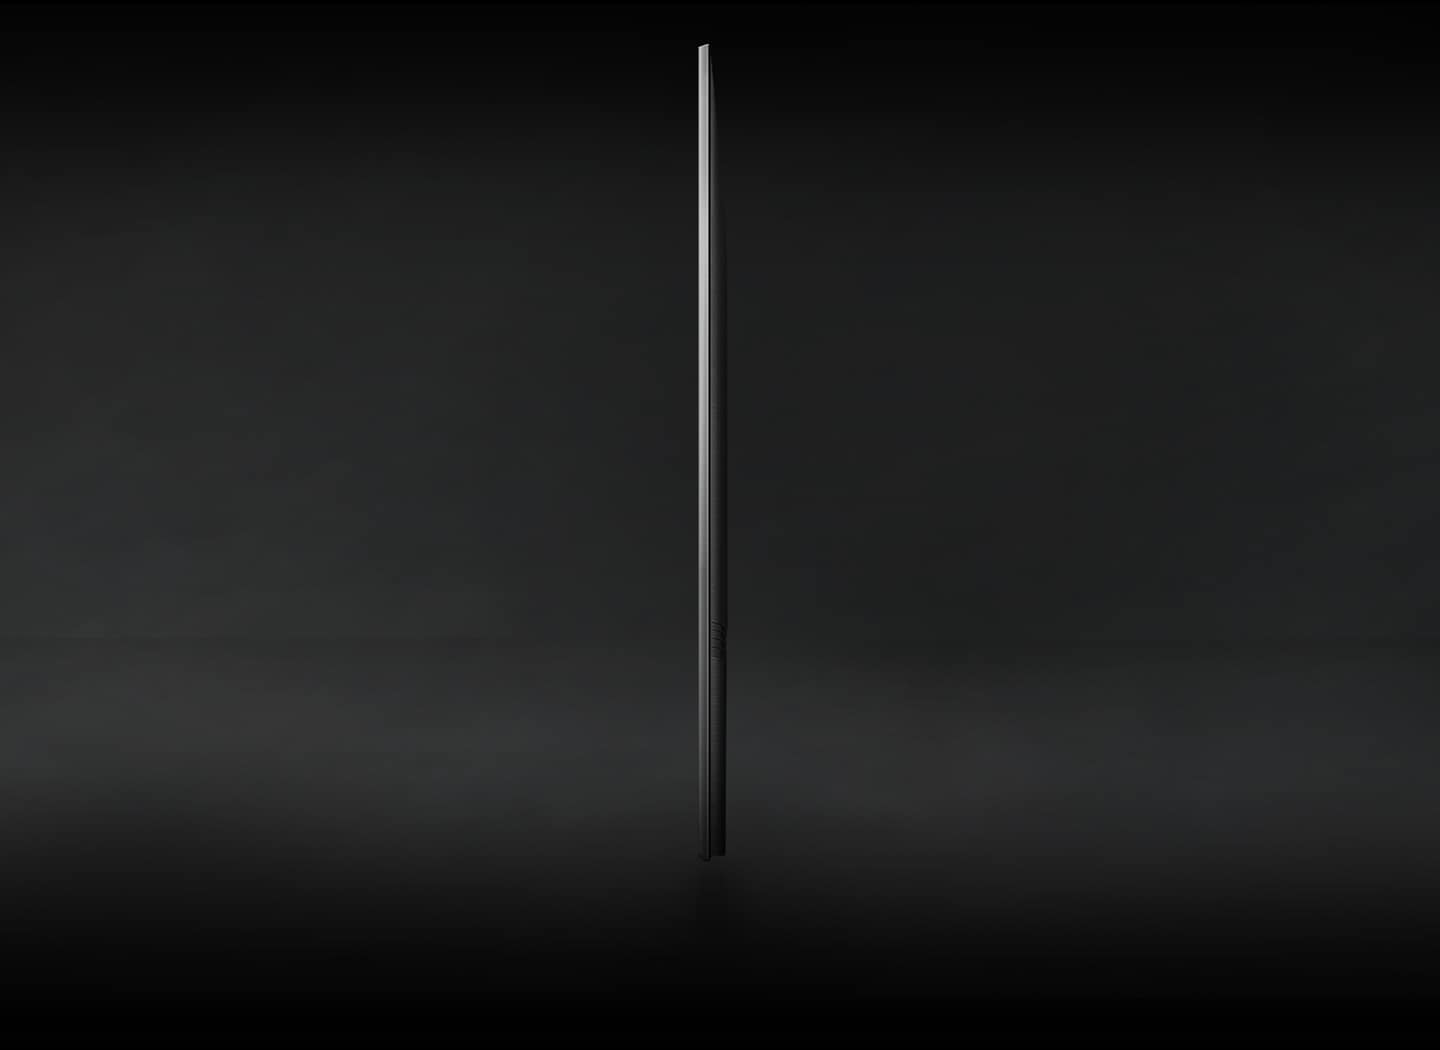 Bočni profil Crystal UHD TV-a prikazan je kako bi pokazao njegov AirSlim dizajn.